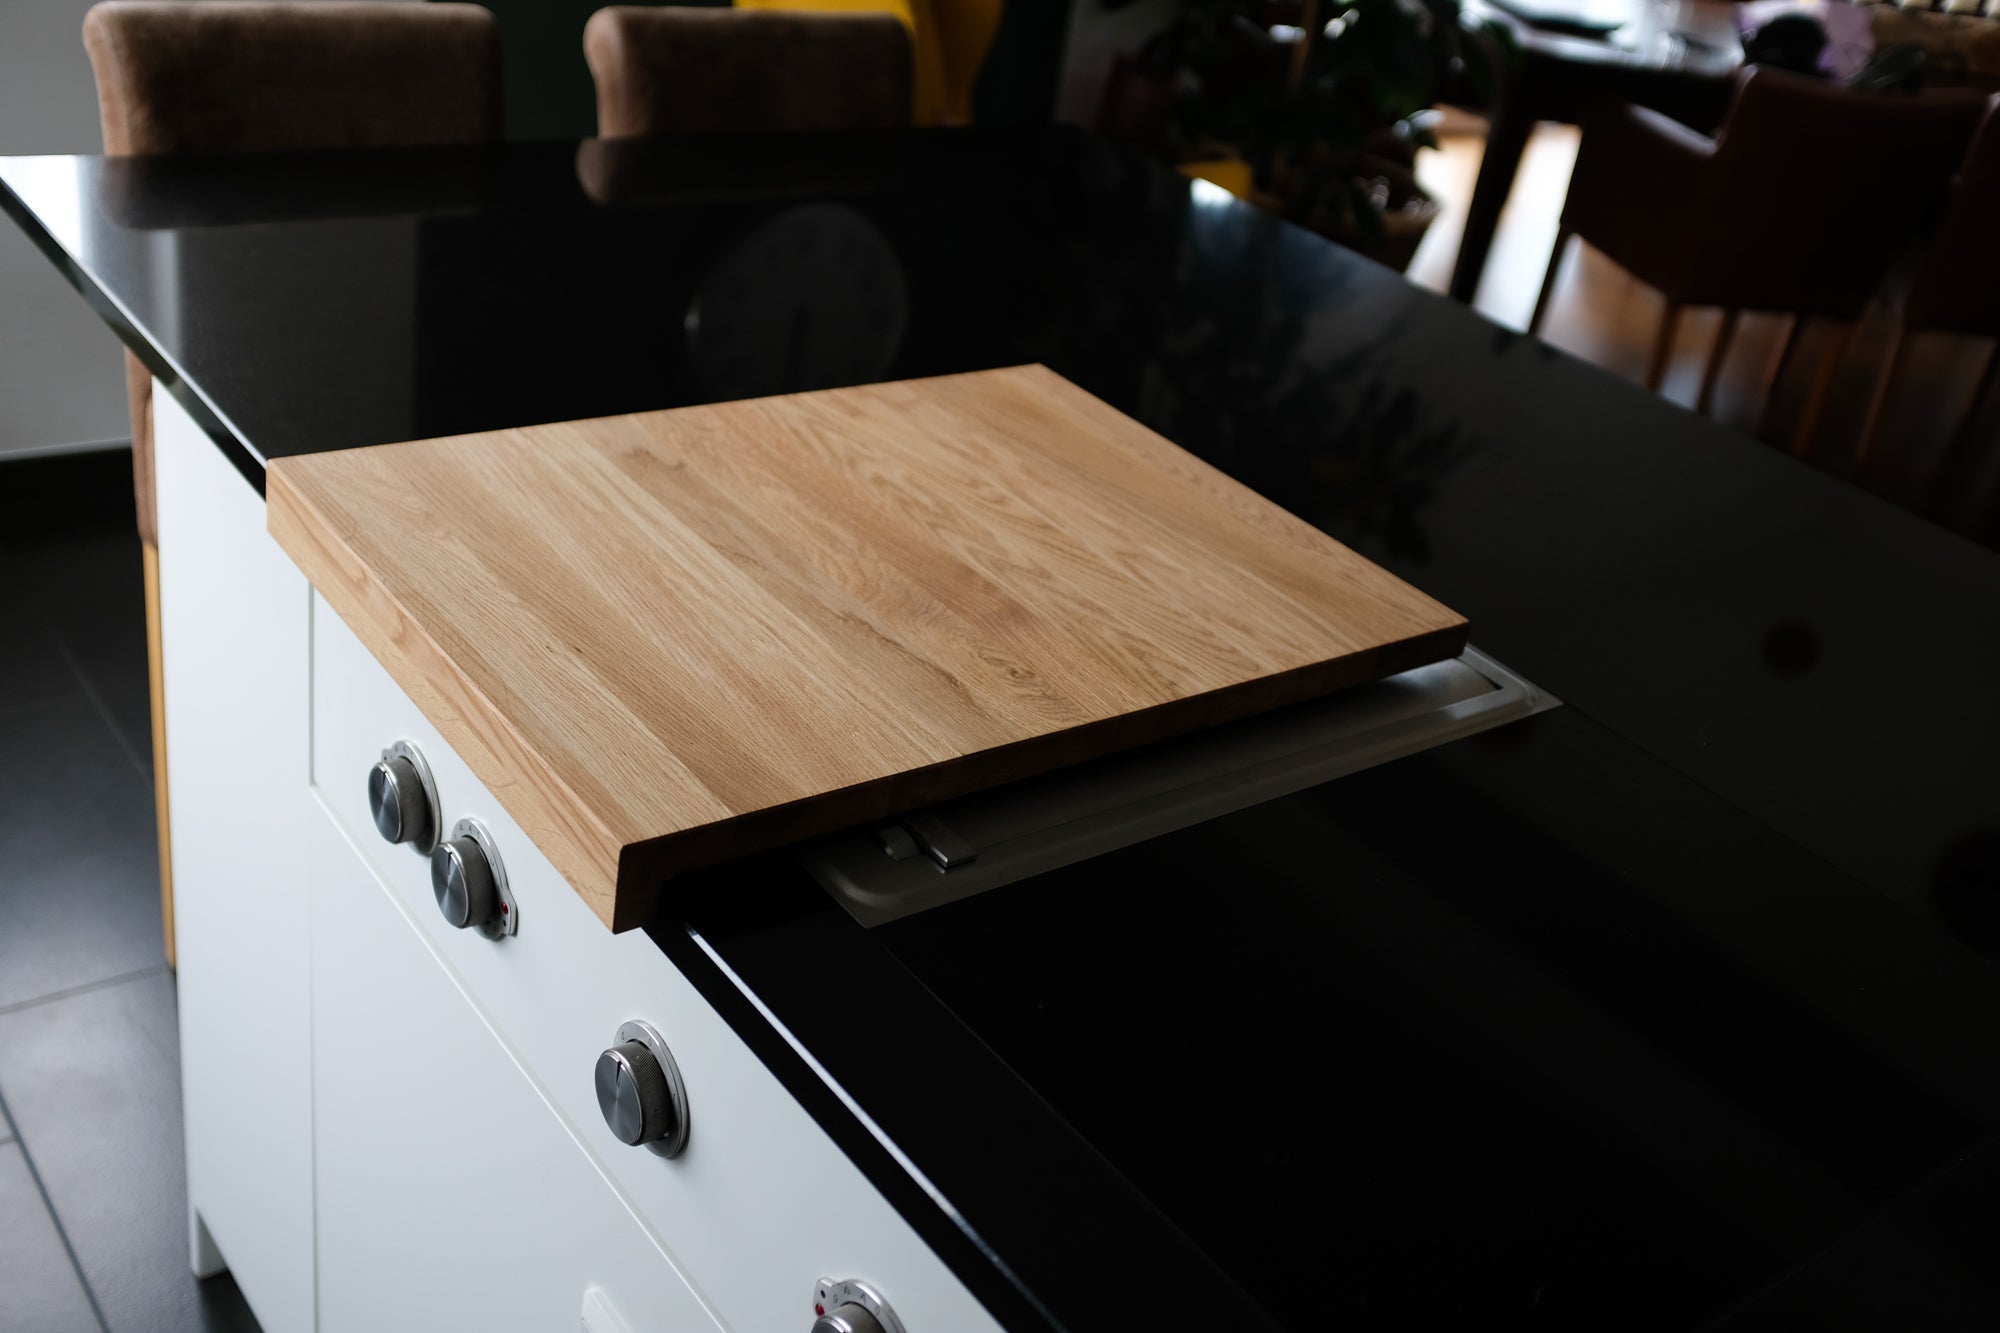 Design Küchensinsel mit Nero Assoluto Platte auf der ein Bora Kochfeld eingelassen ist. Auf dem Kochfeld liegt eine Eichenholz Abdeckung